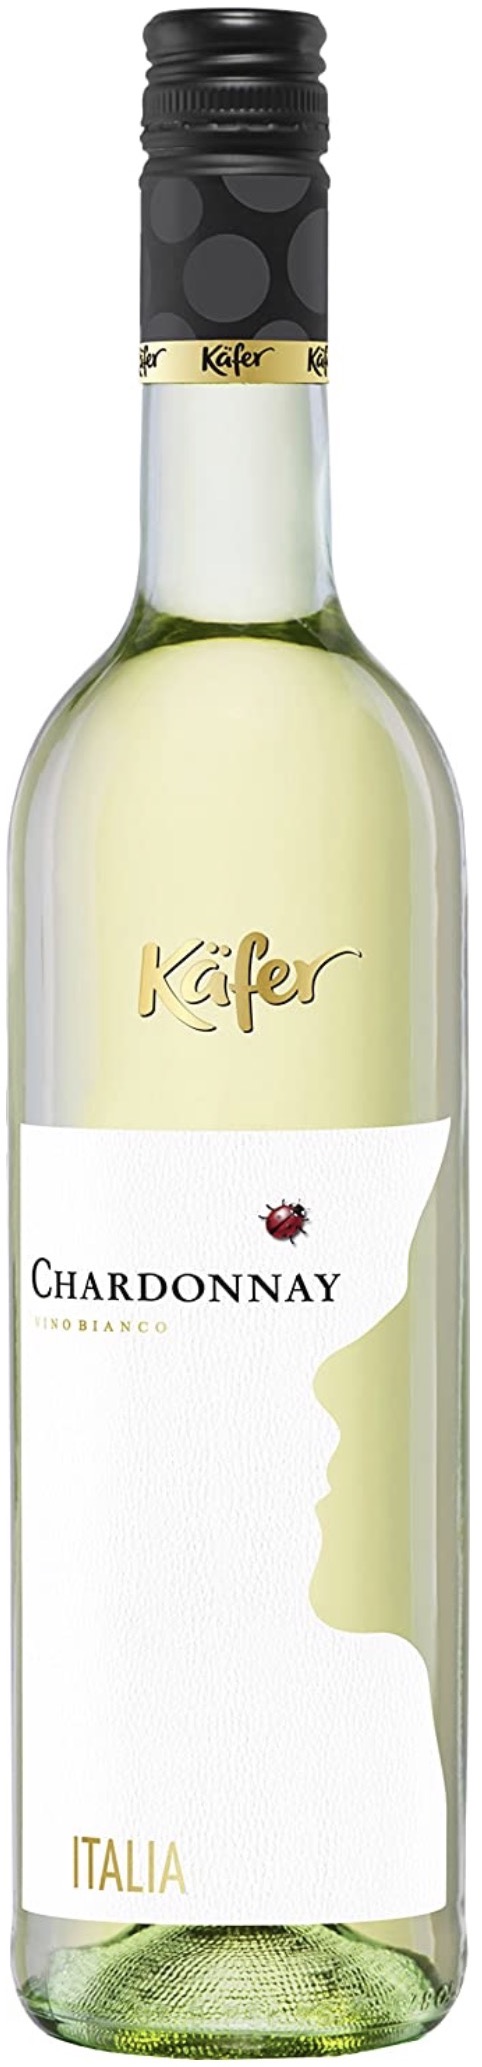 Käfer Chardonnay Italien trocken 12% vol. 0,75L